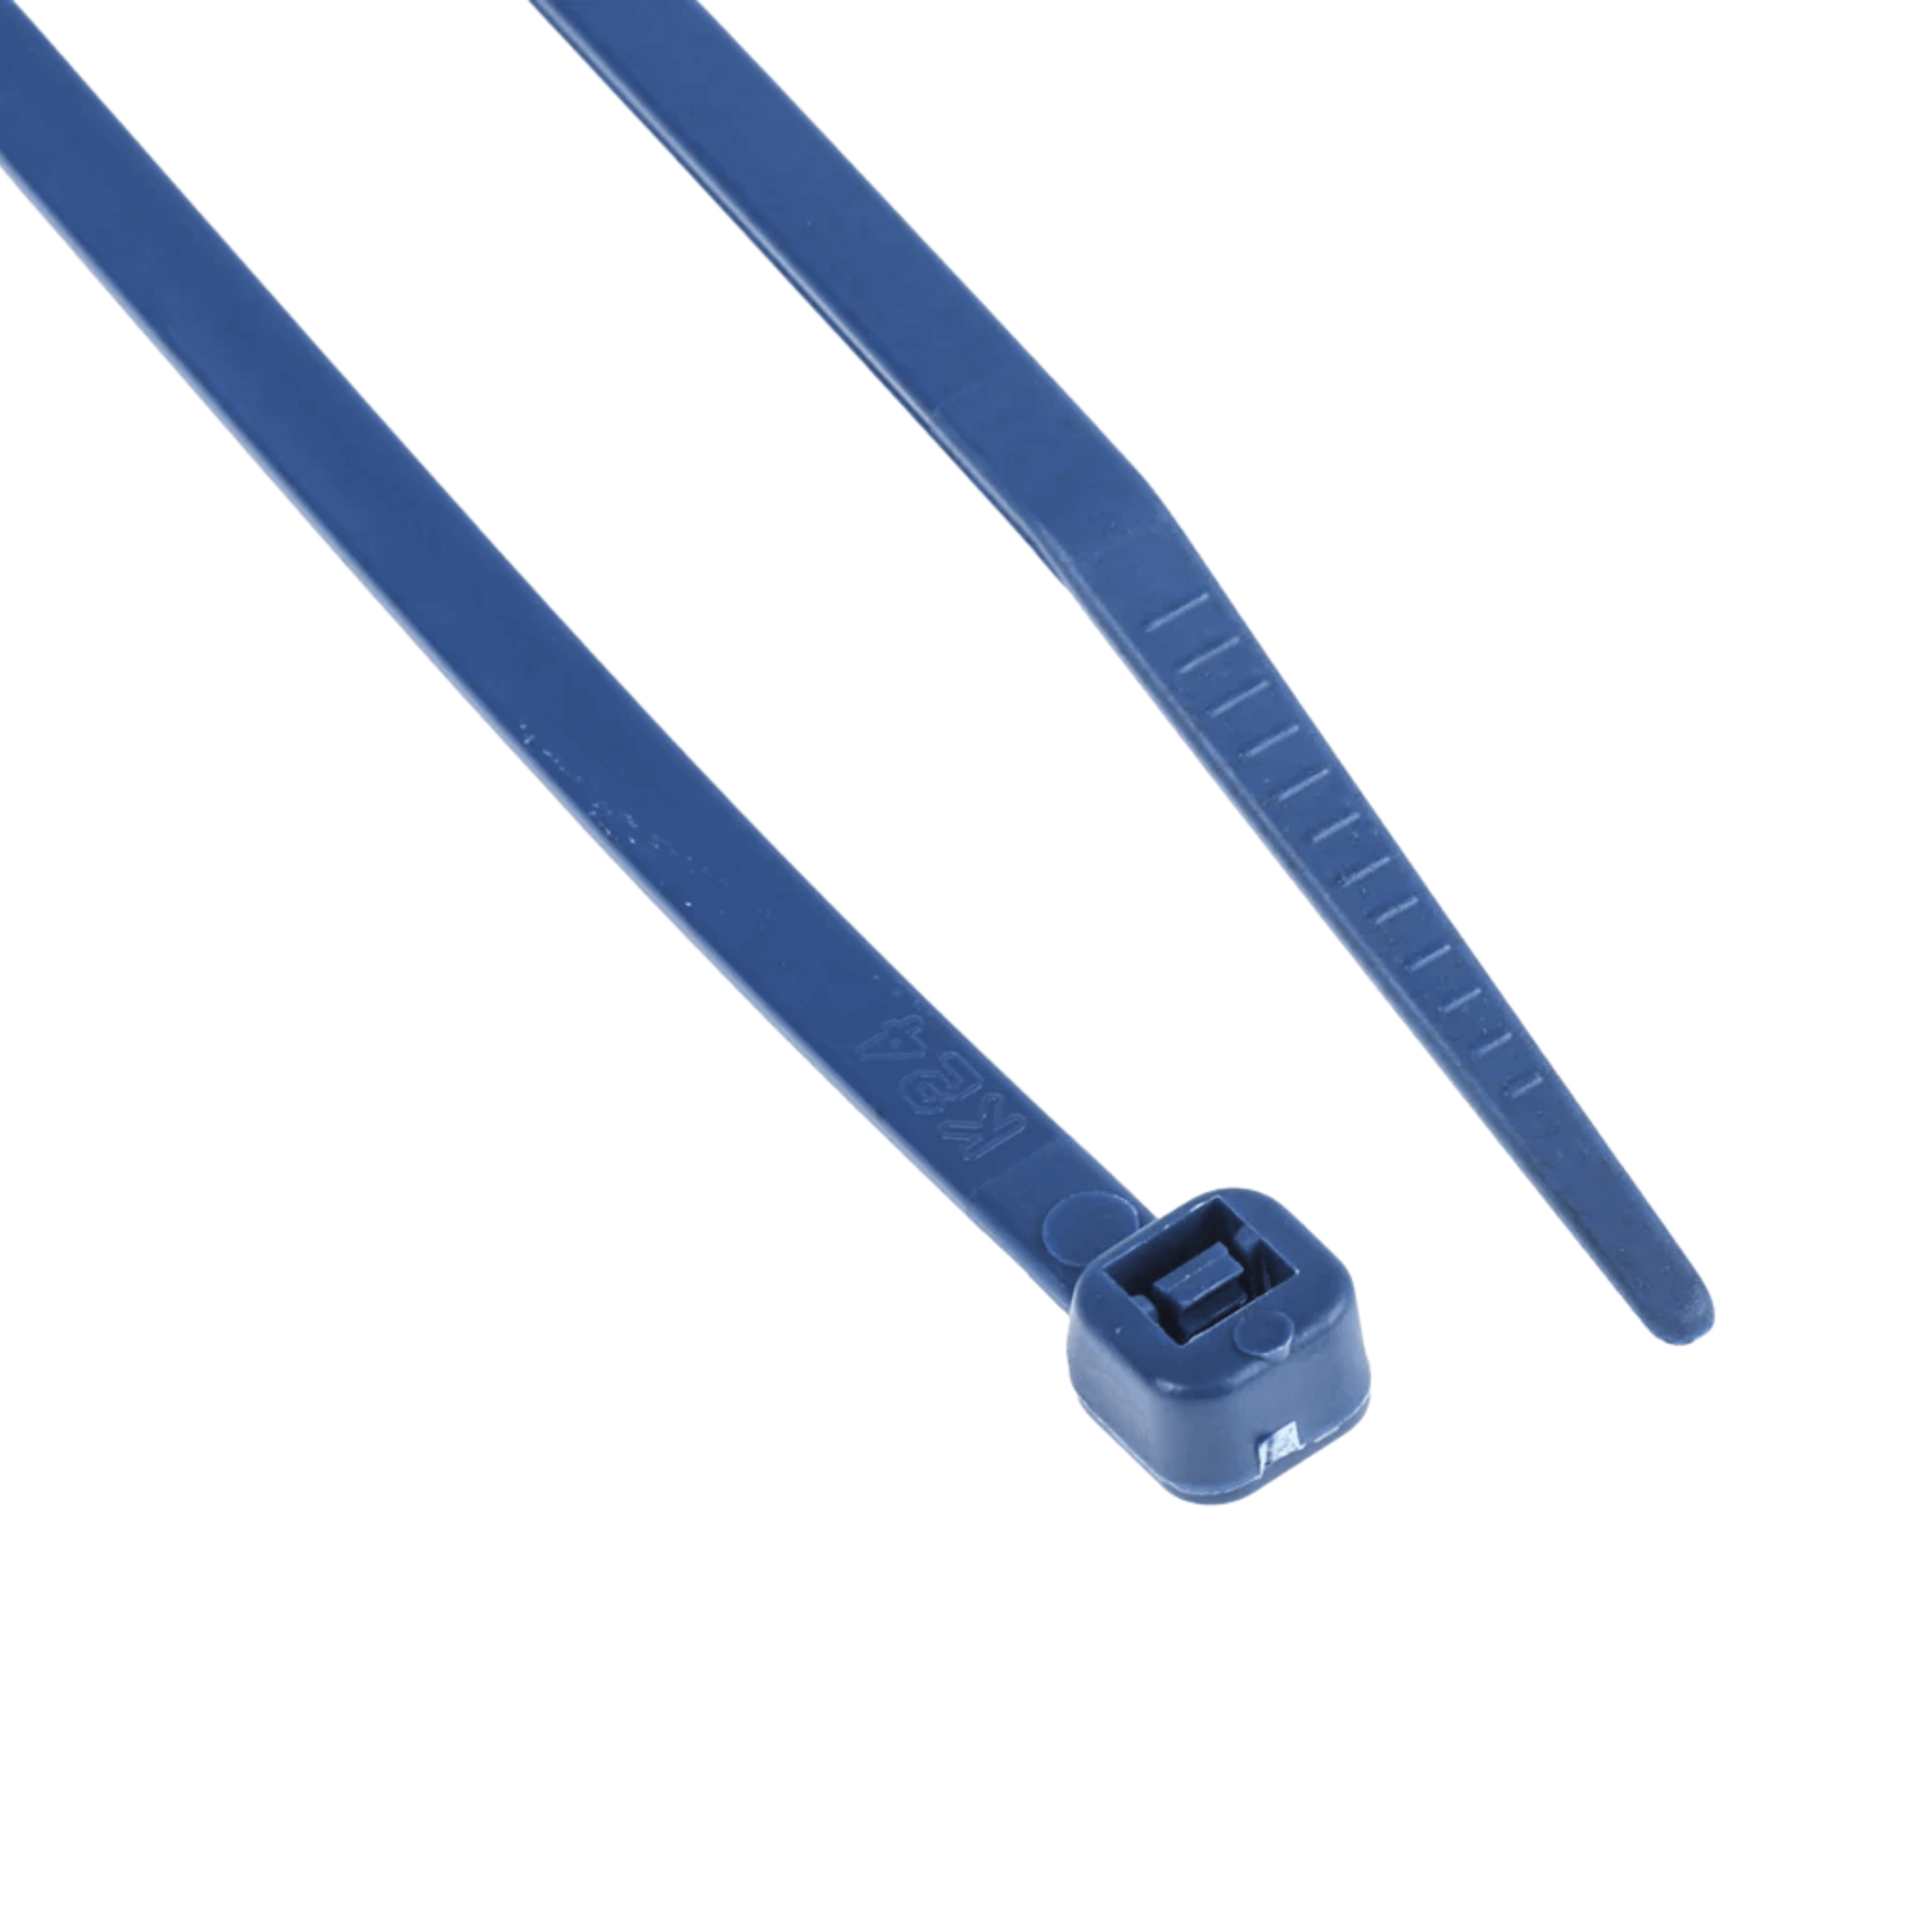 Plastic Ties- Blue, 100 Pack, 3.6 mm